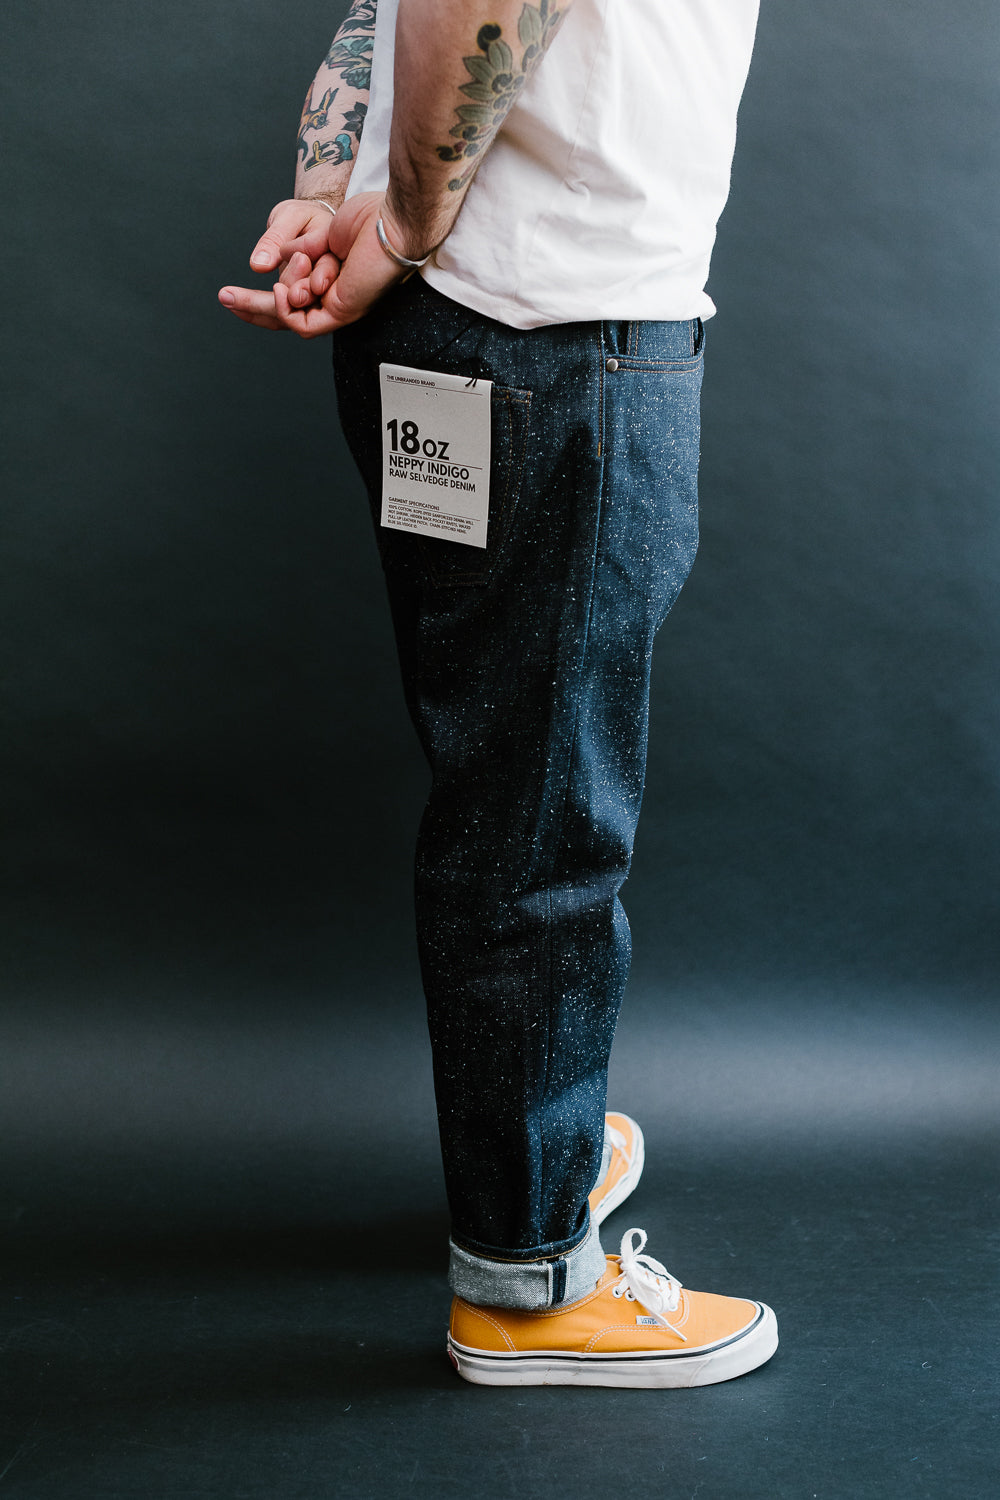 The Unbranded Brand: 18oz Neppy Indigo Jeans 